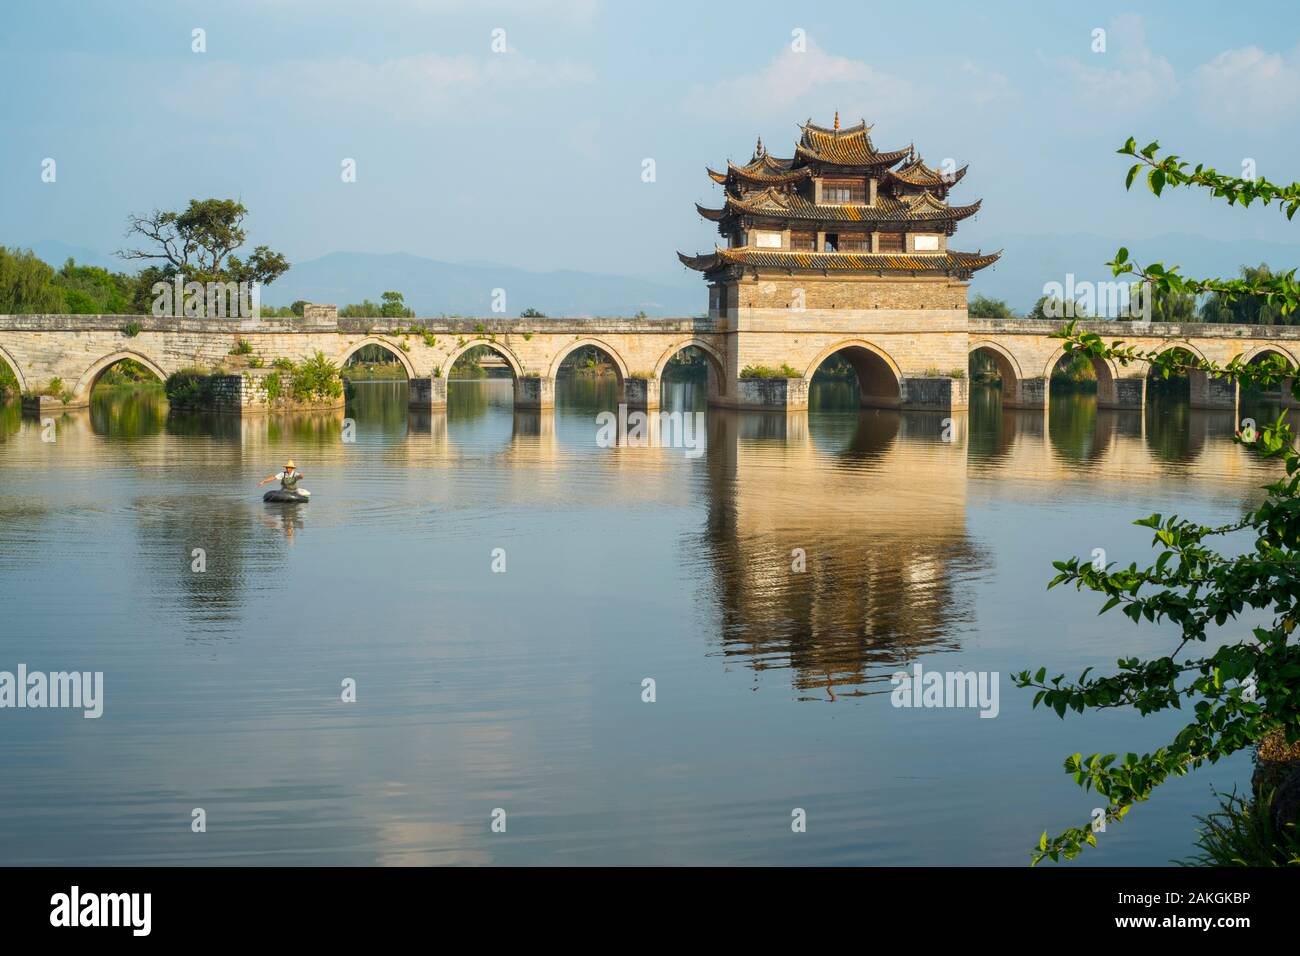 The ancient Shuanglong Bridge (Twin Dragon Bridge) in Jianshui, Honghe, Yunnan, China. Stock Photo